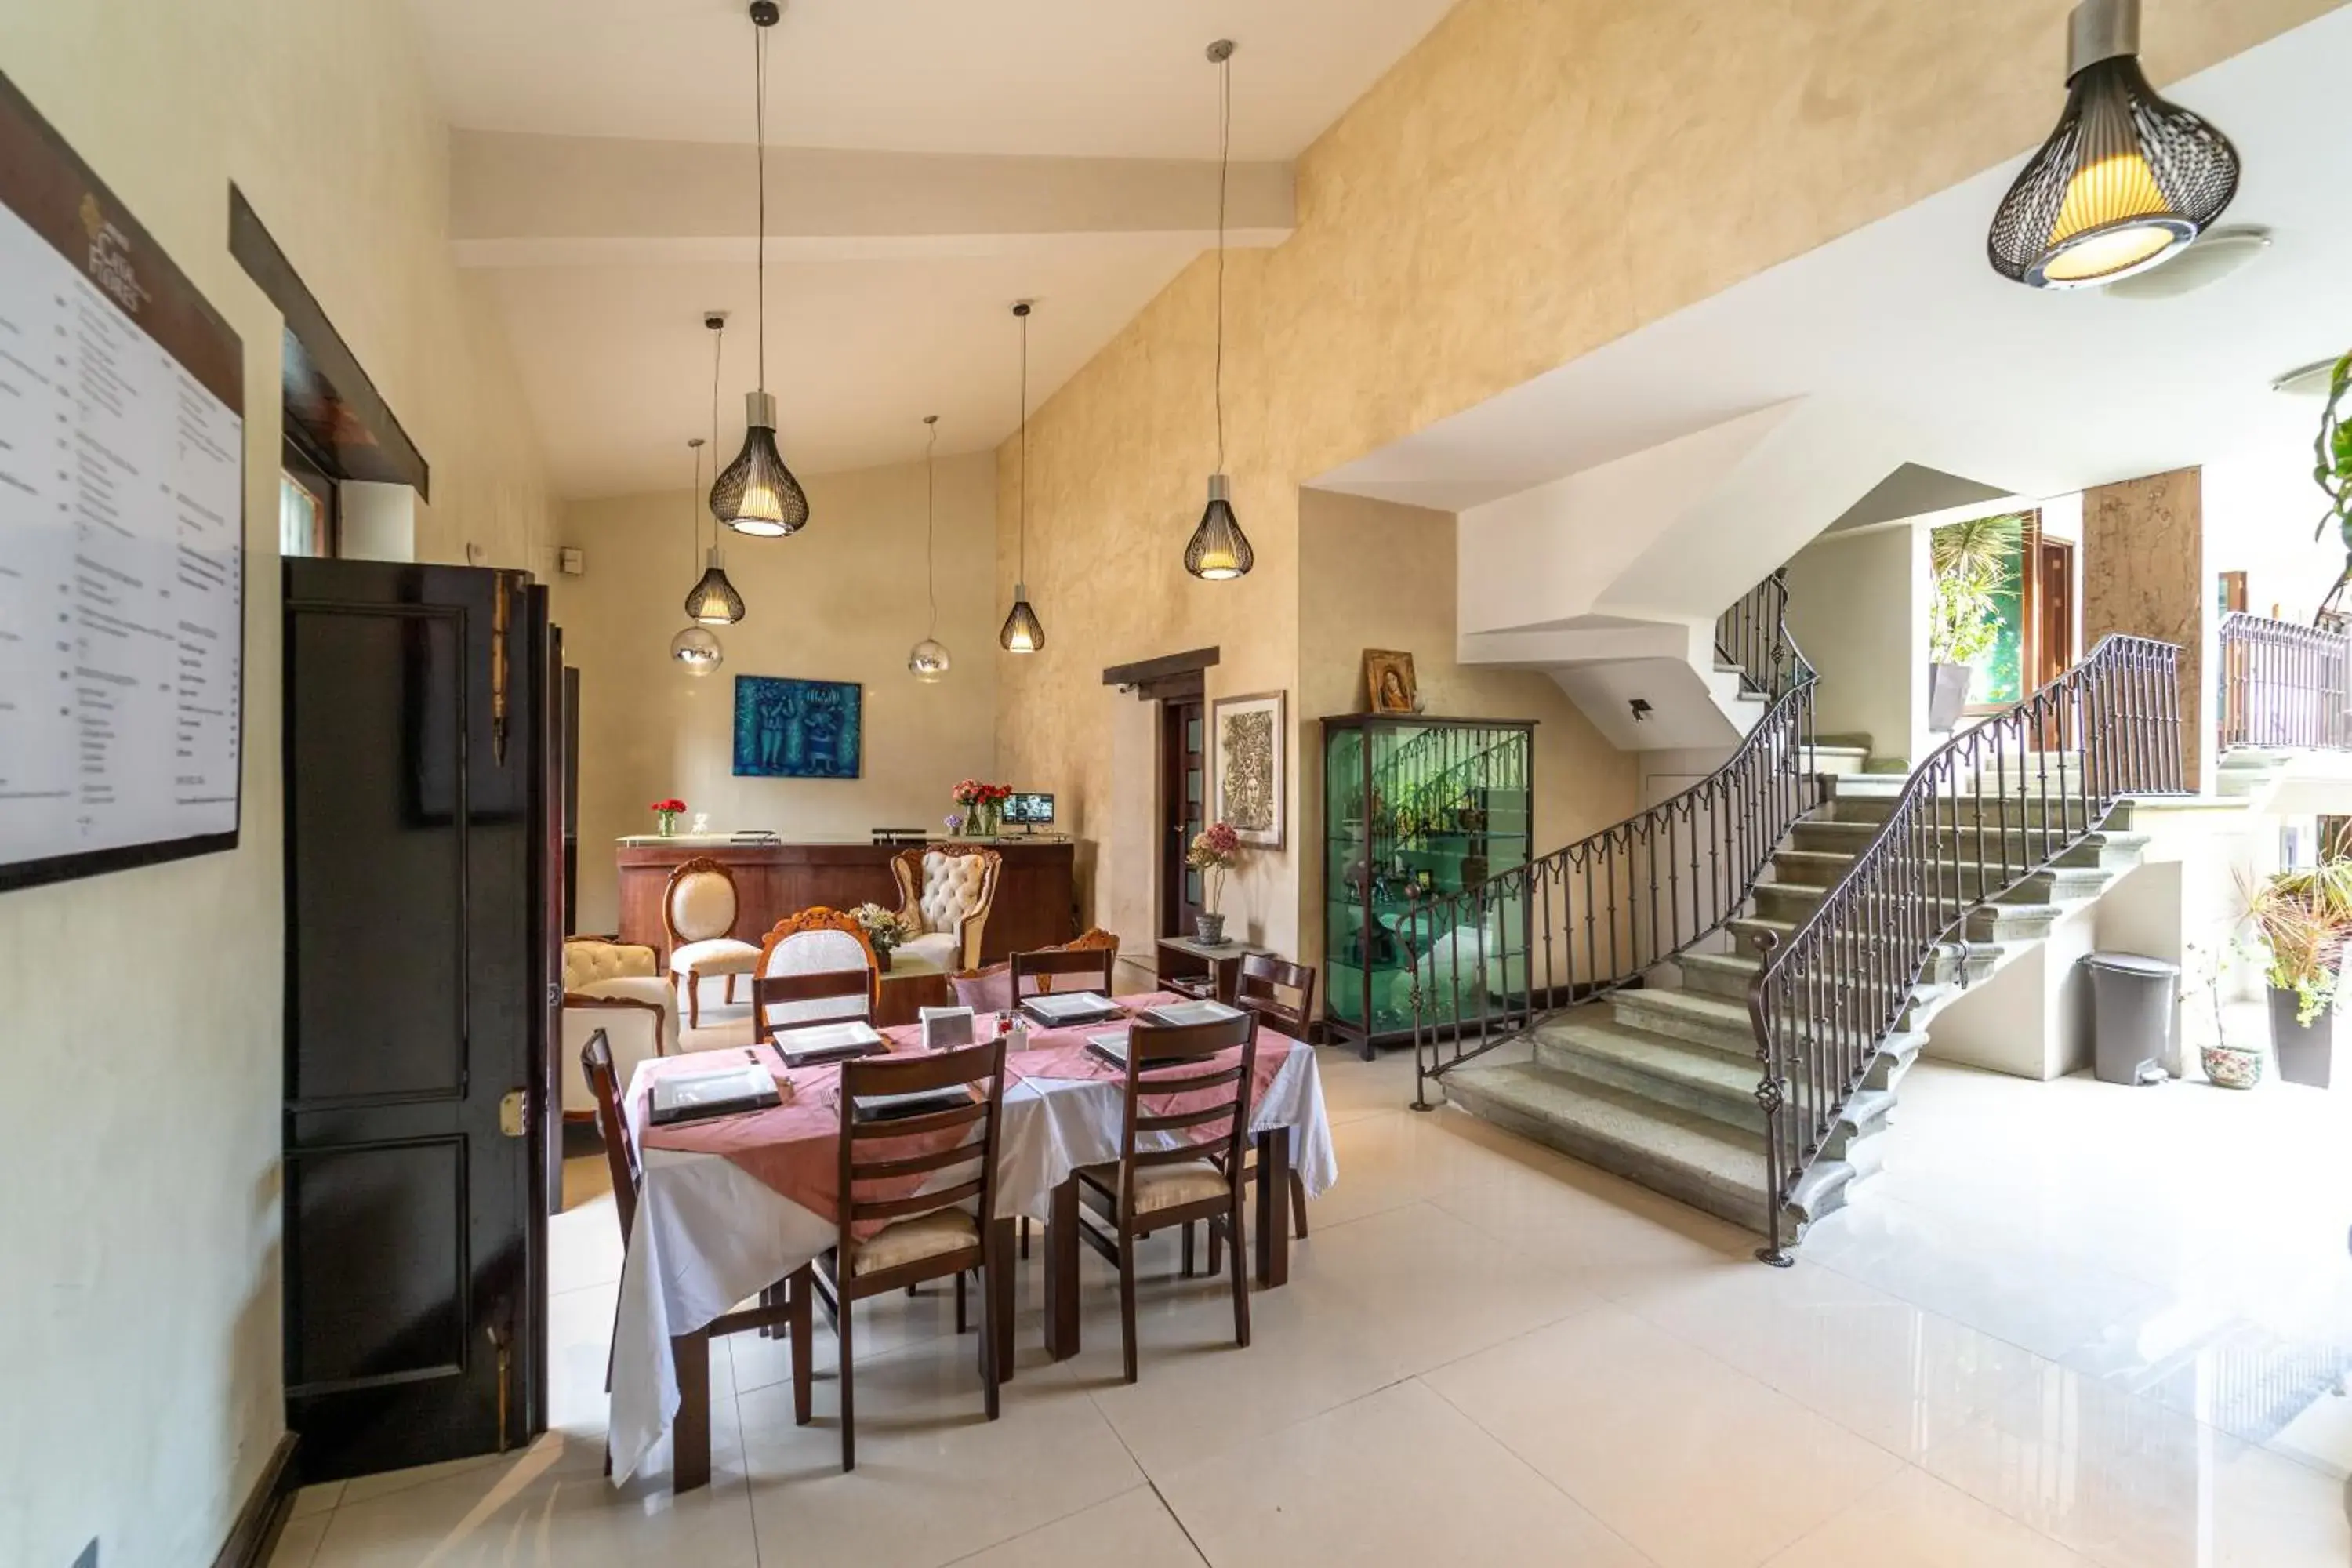 Lobby or reception, Restaurant/Places to Eat in Casa de las Flores Hotel